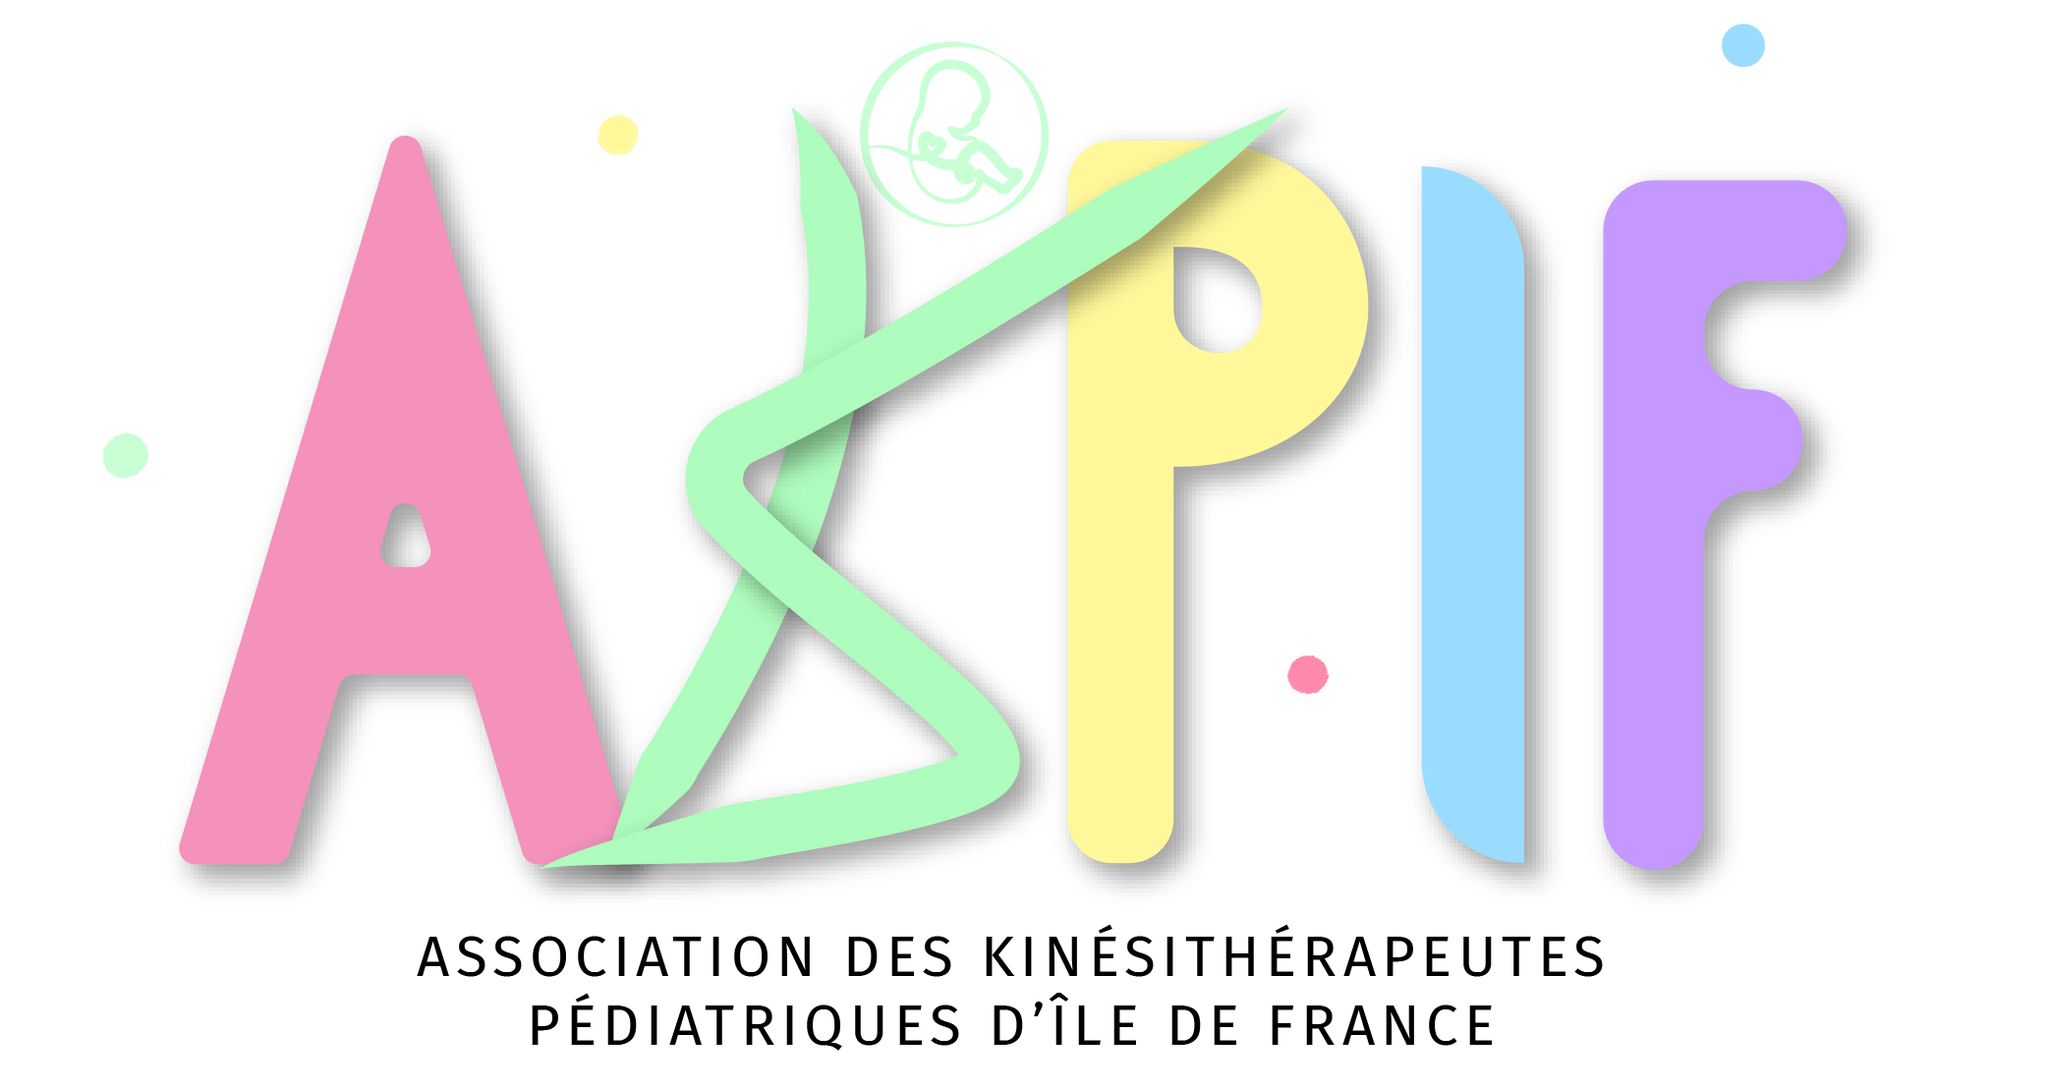 Association des Kinésithérapeutes Pédiatriques d'Ile de France